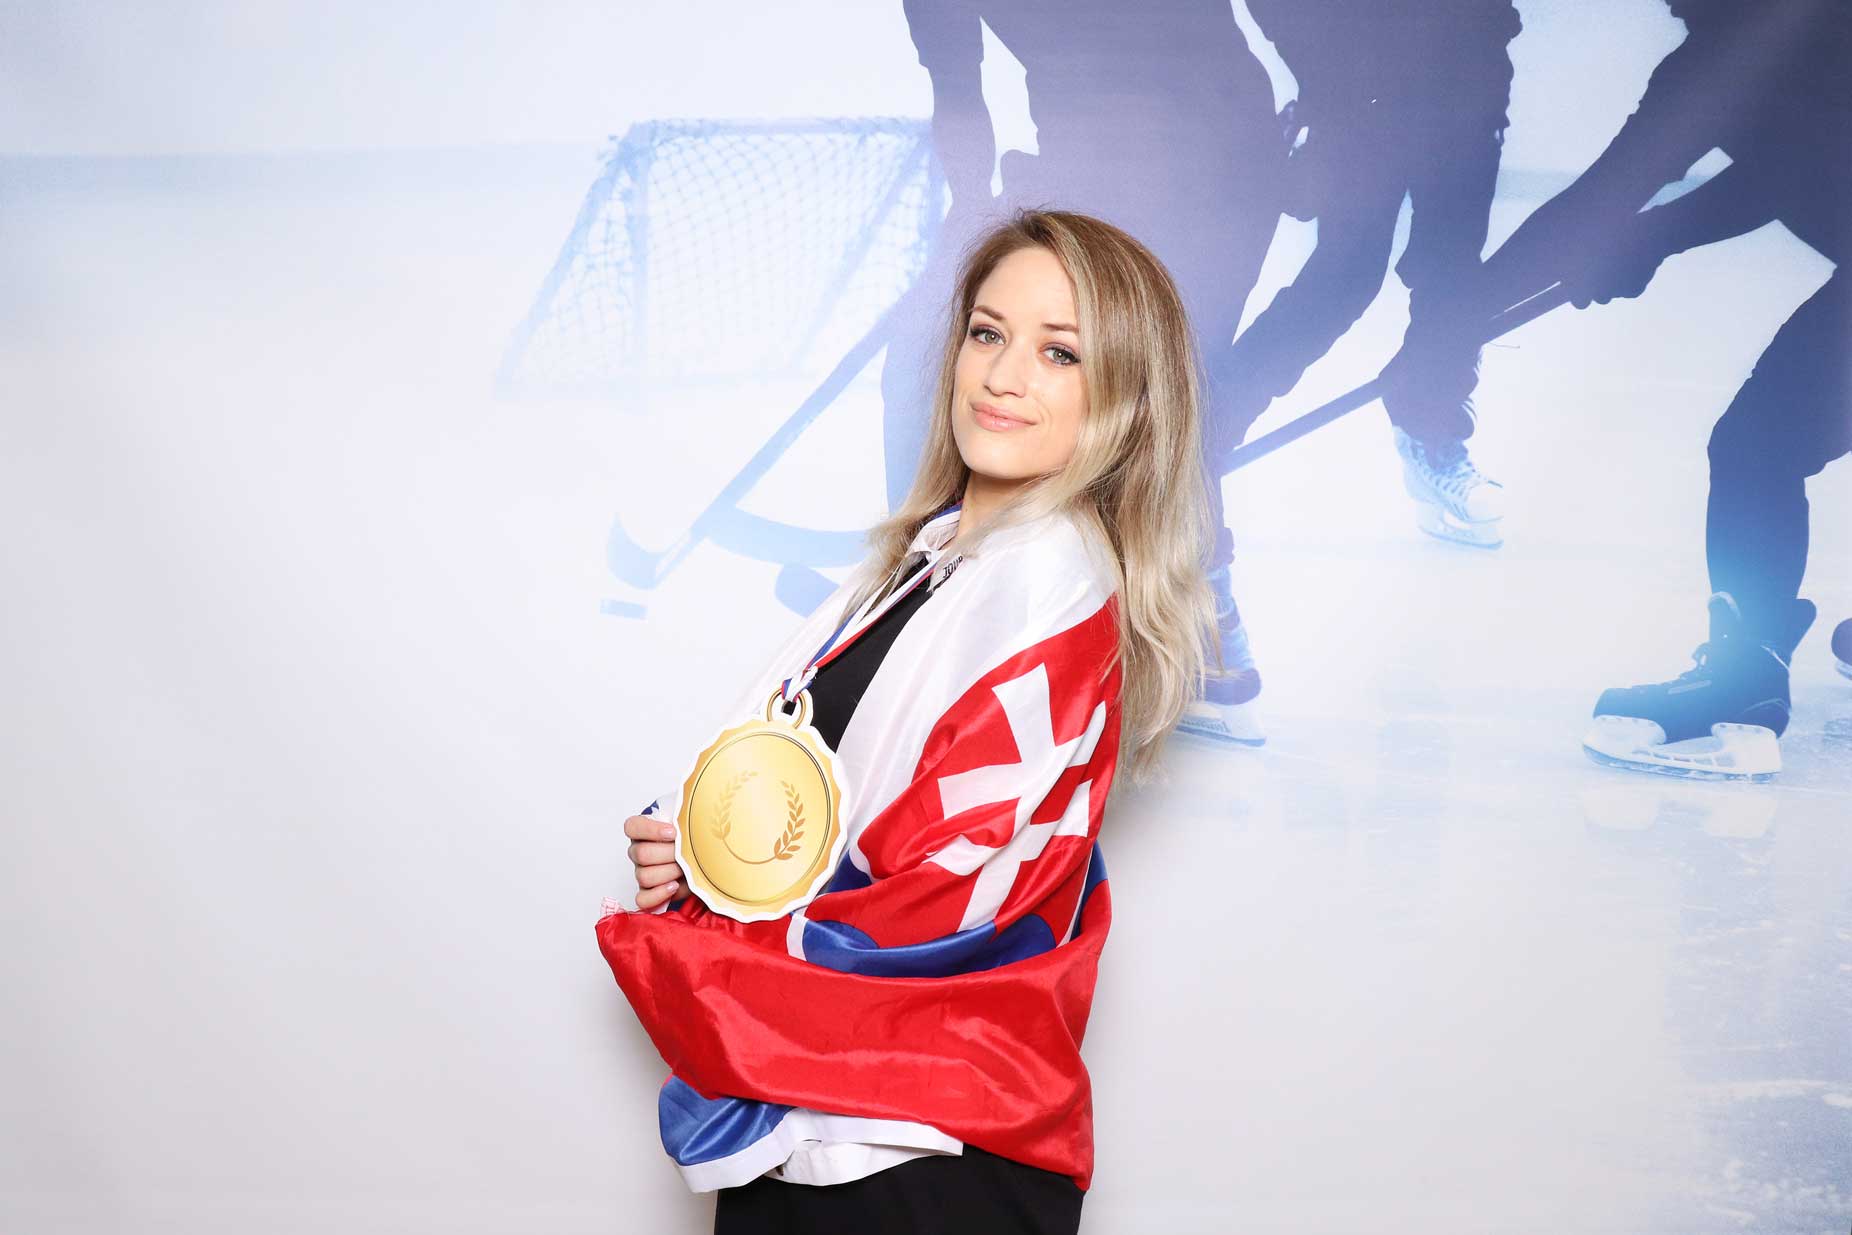 Fotostena - majstrovstvá v hokeji - fotokútik Bratislava.